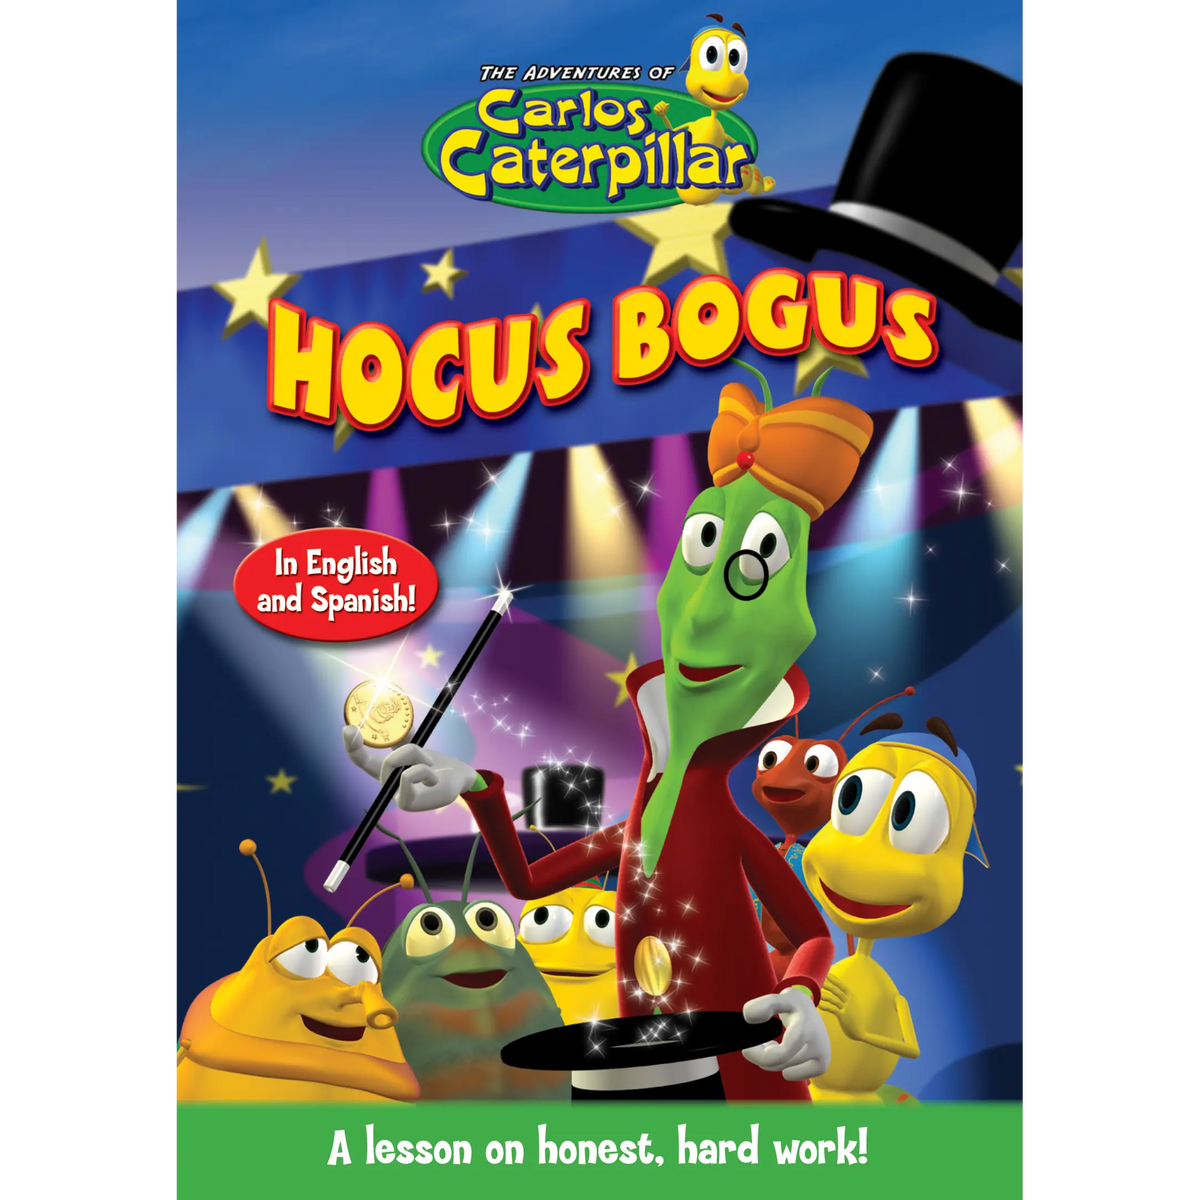 Carlos Caterpillar Episode 12: Hocus Bogus - Video Download